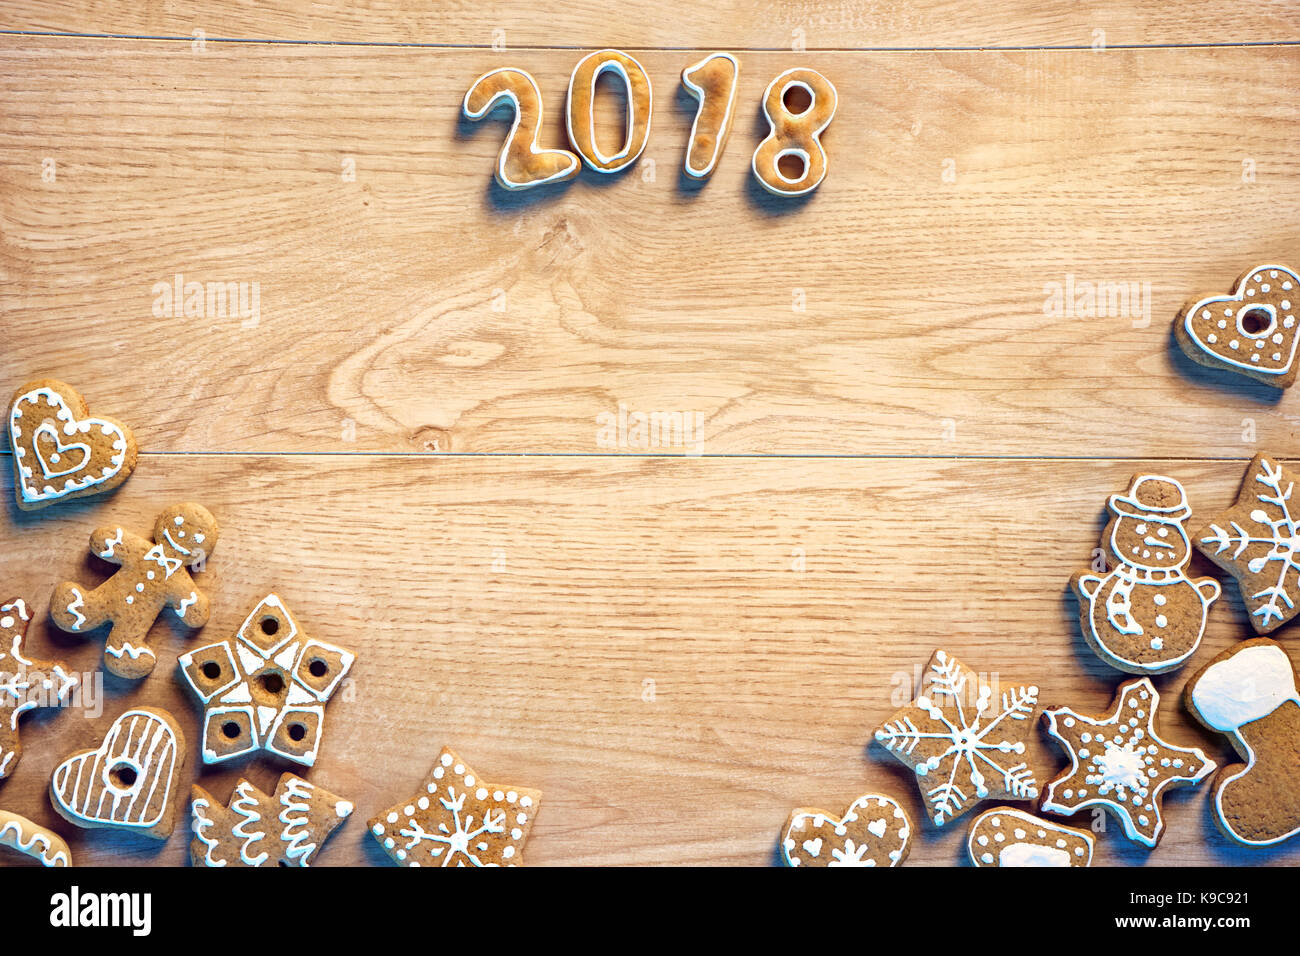 Buon Natale e felice anno nuovo! Biscotti fatti in casa su sfondo di legno. copiare lo spazio per il tuo testo. vista dall'alto. dei prodotti ad alta risoluzione Foto Stock